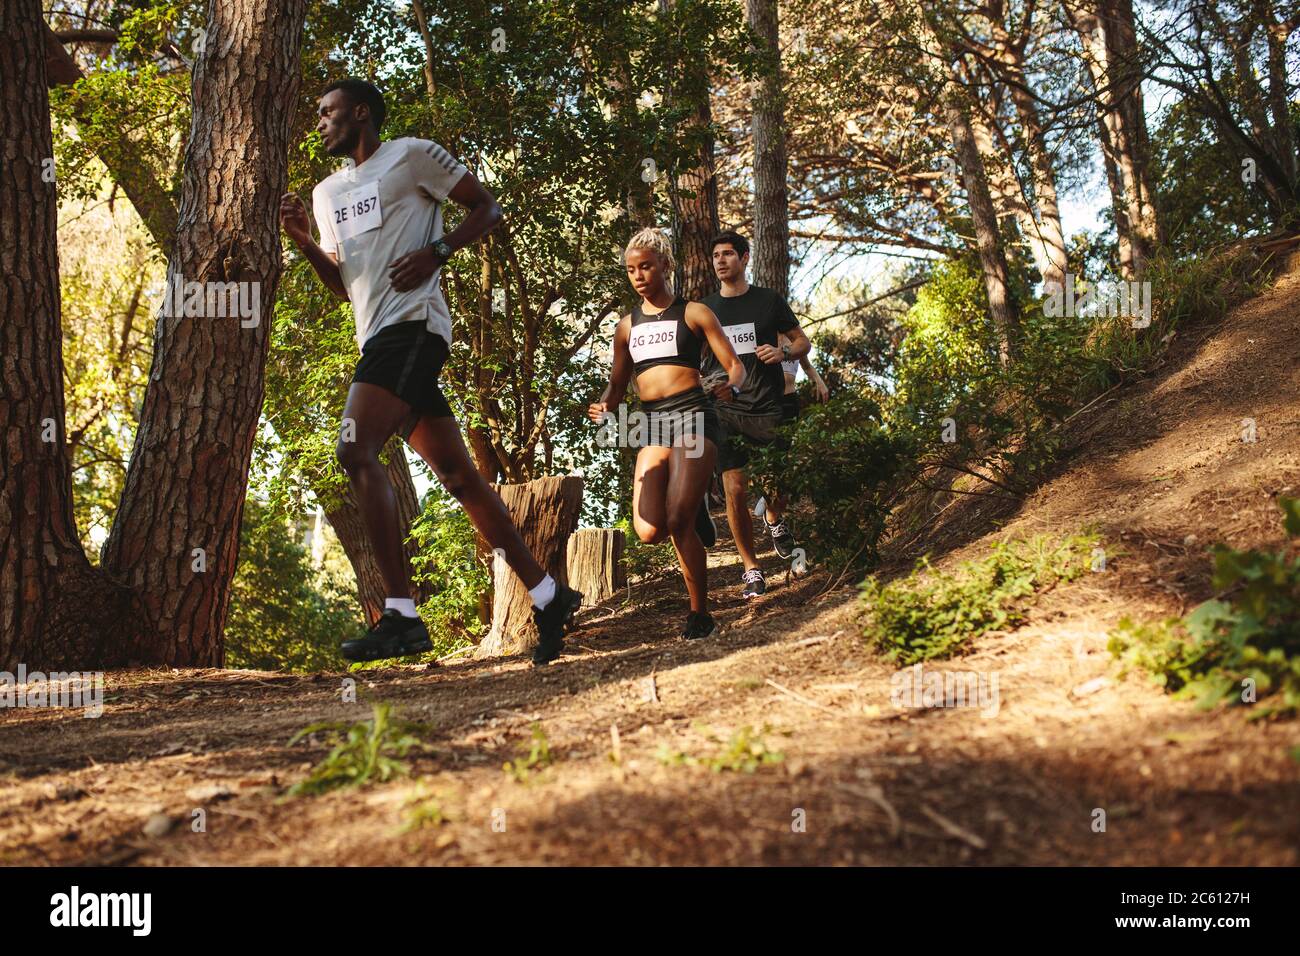 Les athlètes qui descendent sur une colline sur un sentier de montagne. Homme et femme coureur course à pied dans une course de marathon de cross-country. Banque D'Images